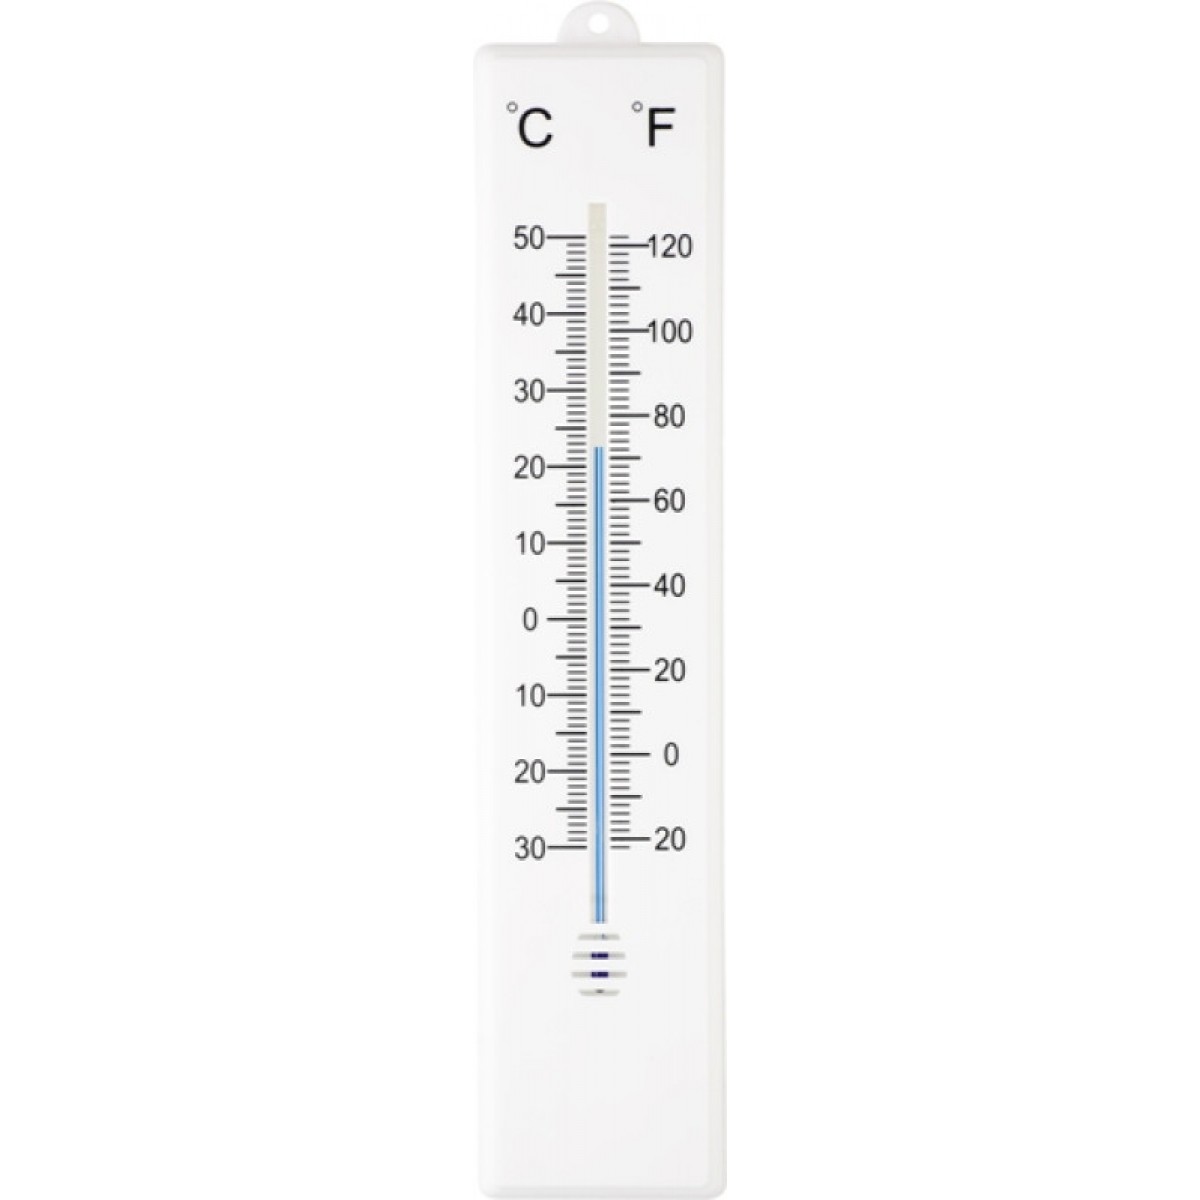 Termometro a infrarossi AGRICOLA HOME & GARDEN 02177533, AgricolaShop